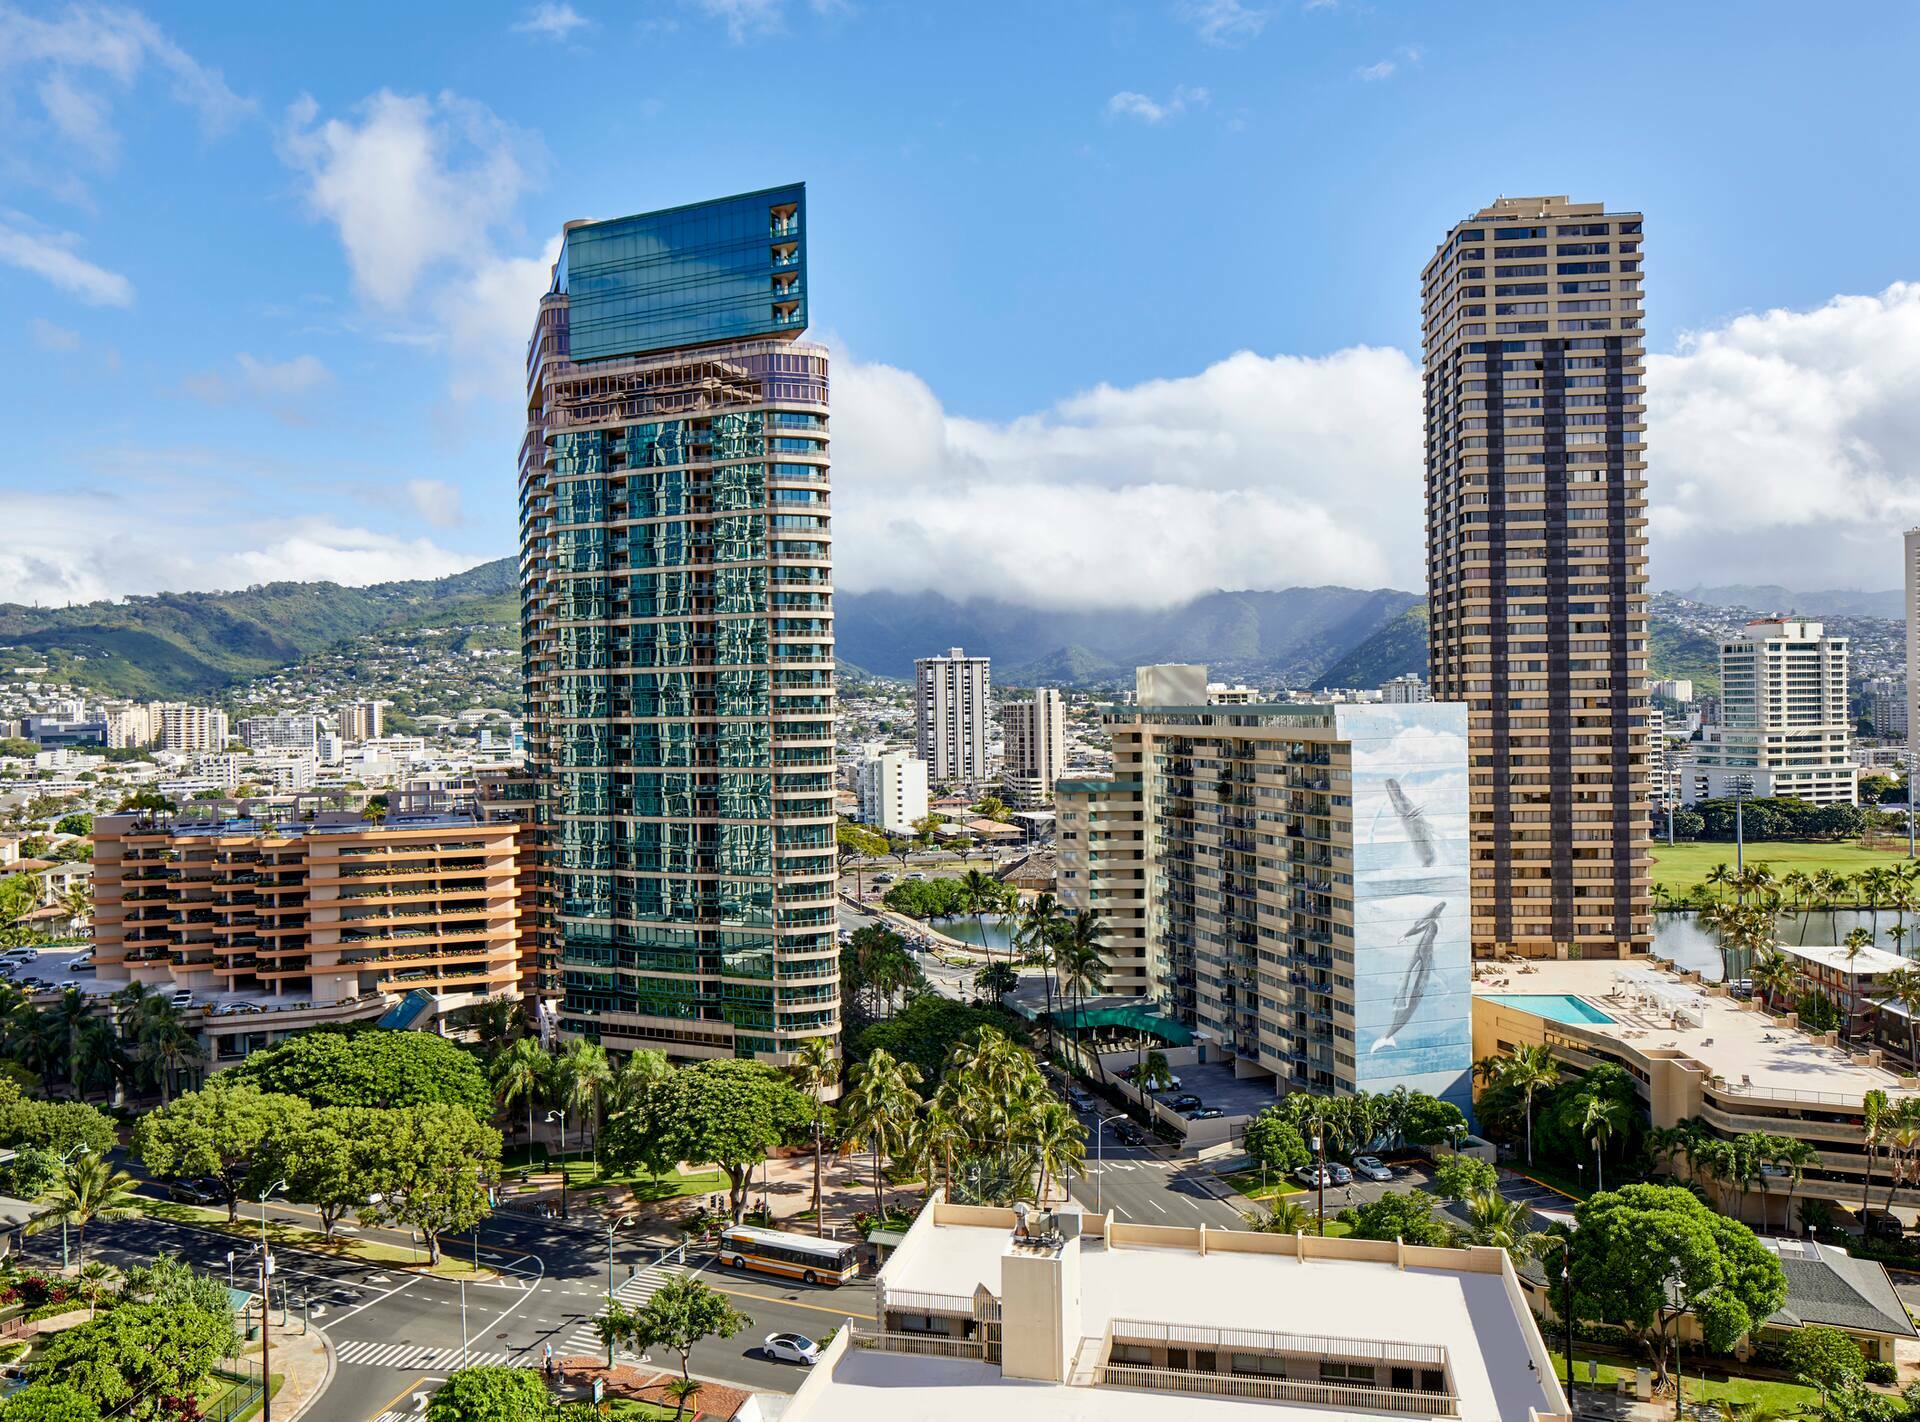 Photo of DoubleTree by Hilton Hotel Alana-Waikiki Beach, Honolulu, HI